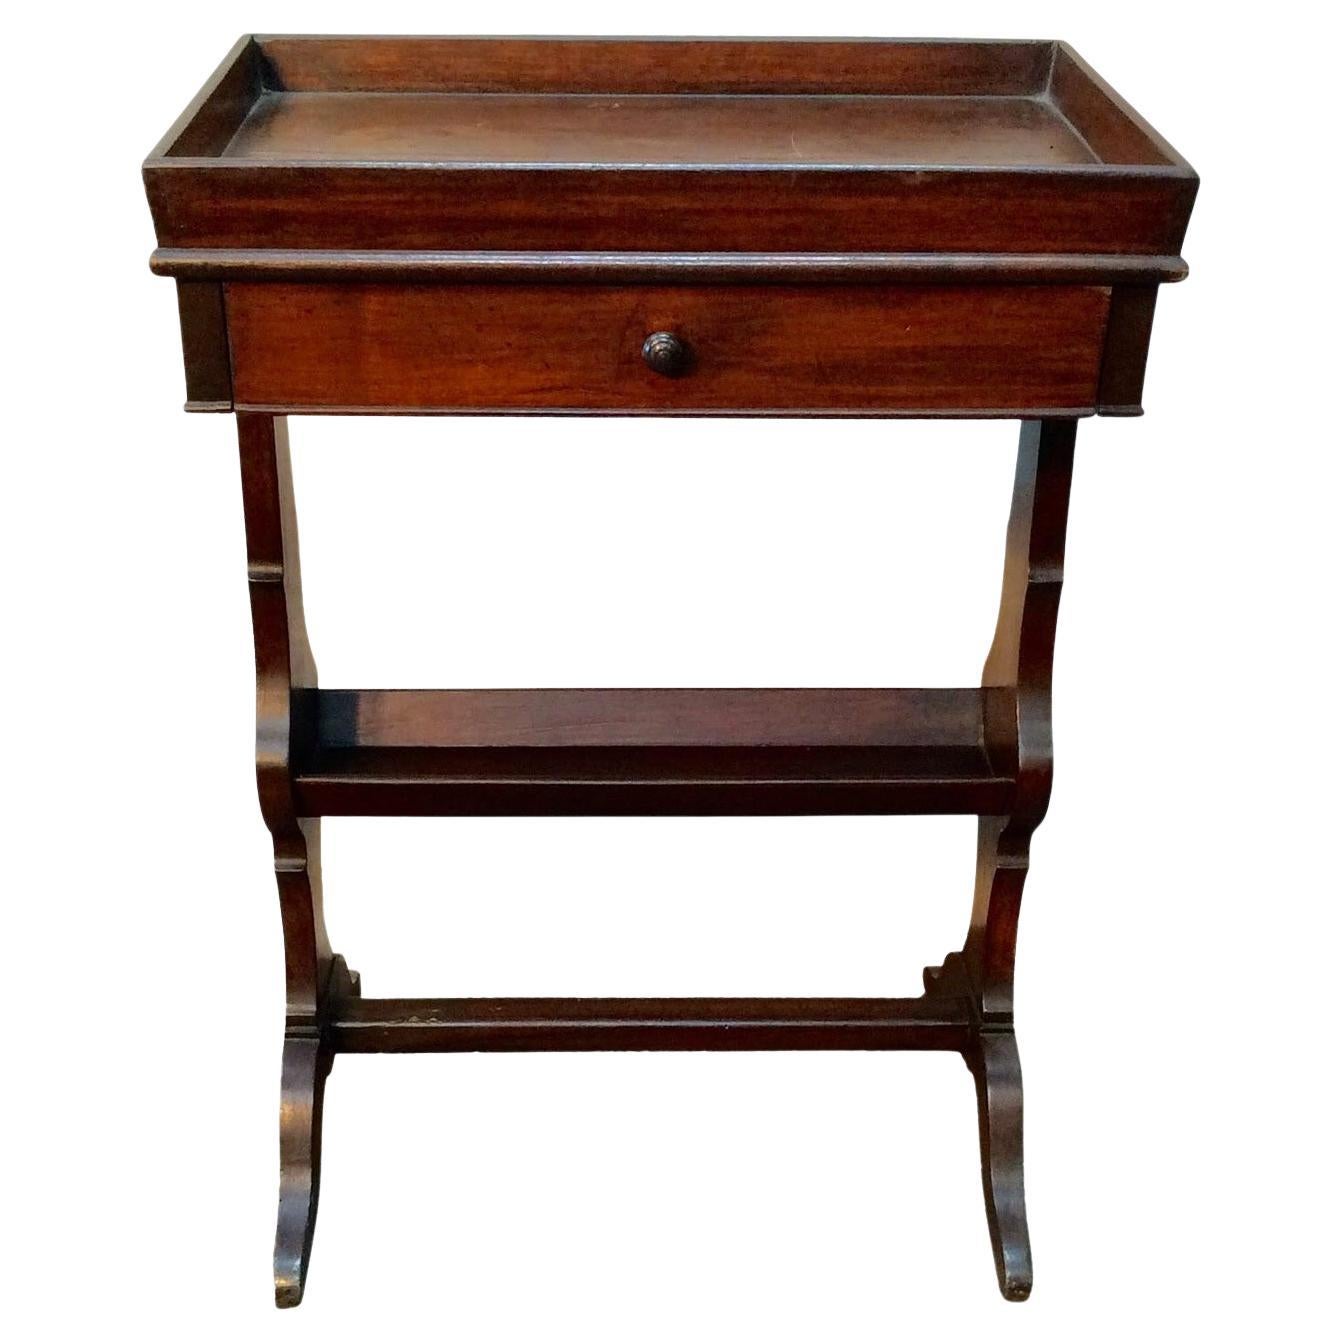 Table d'appoint à un tiroir en noyer français du début du XXe siècle